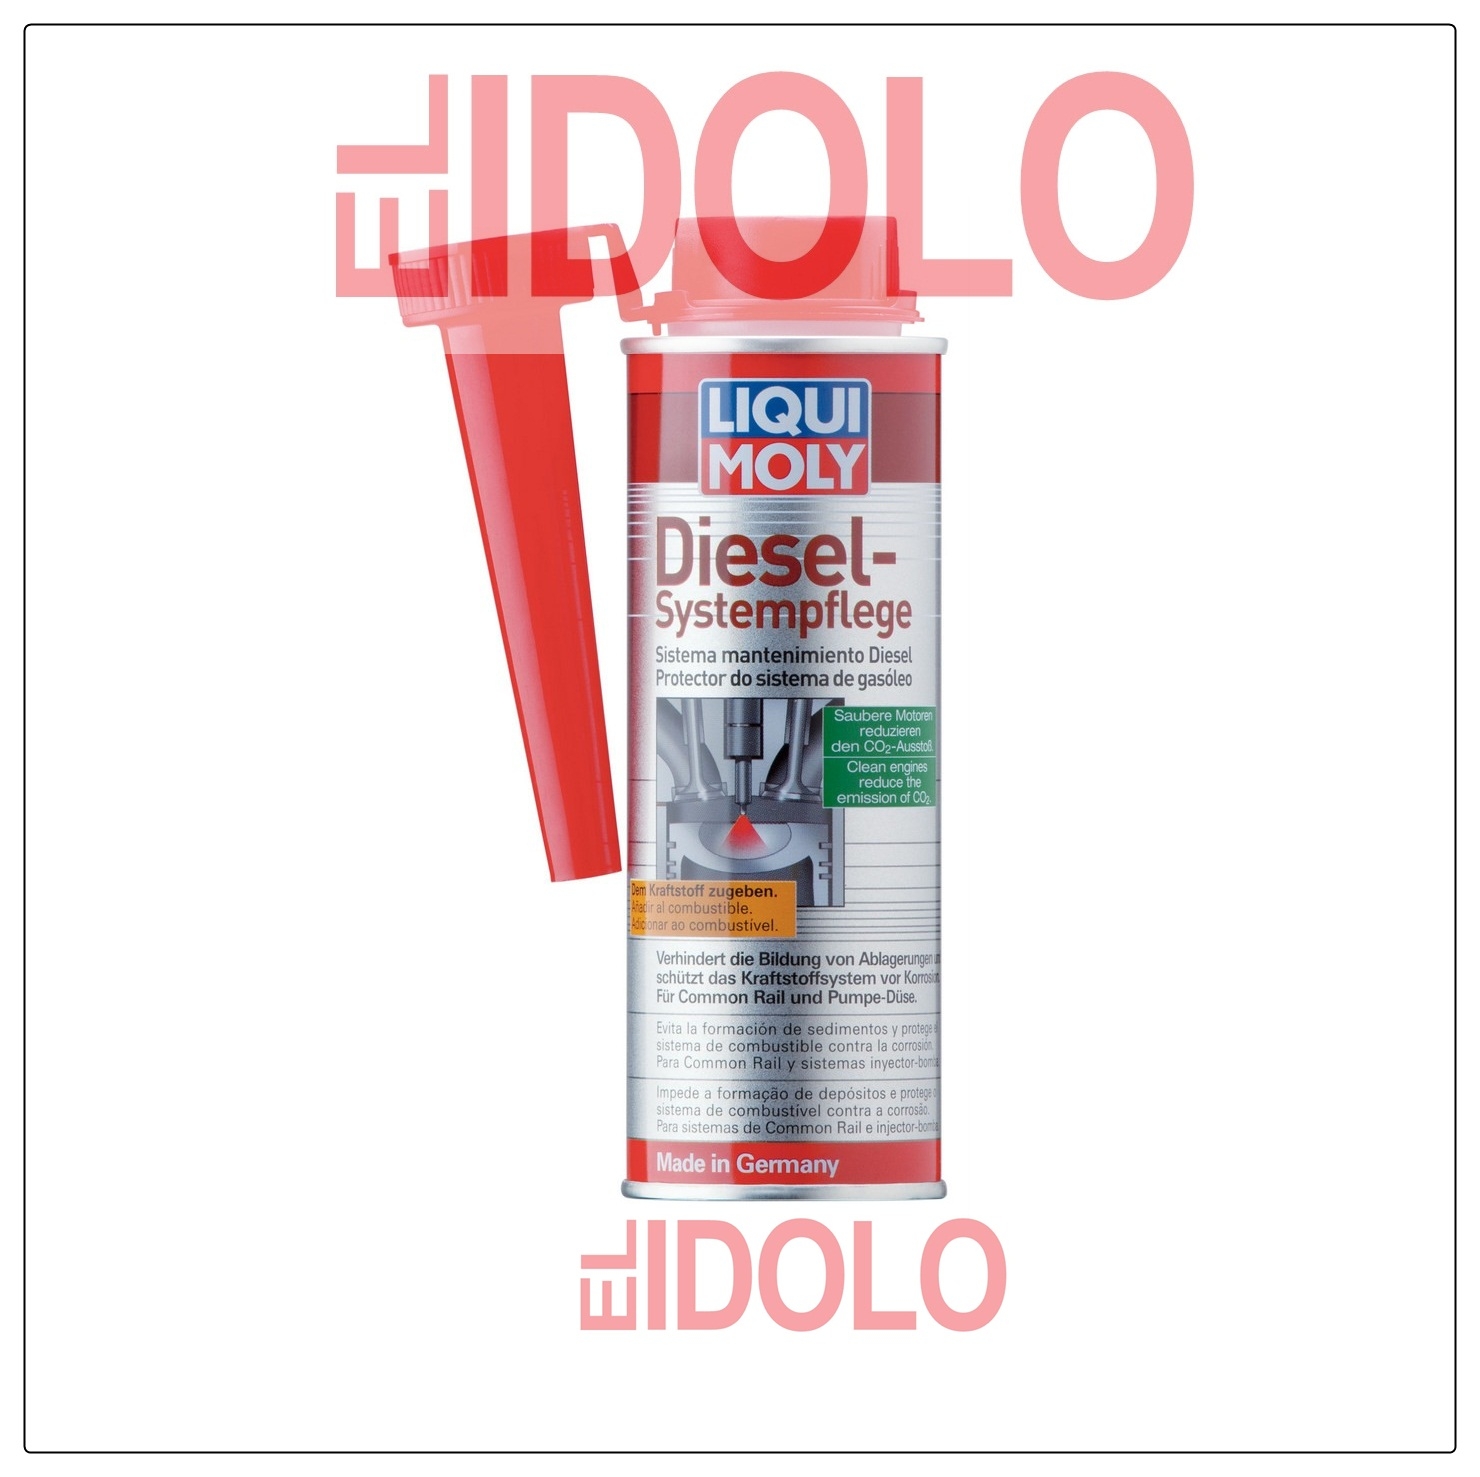 LIQUI MOLY Diesel-Systempflege – El Idolo